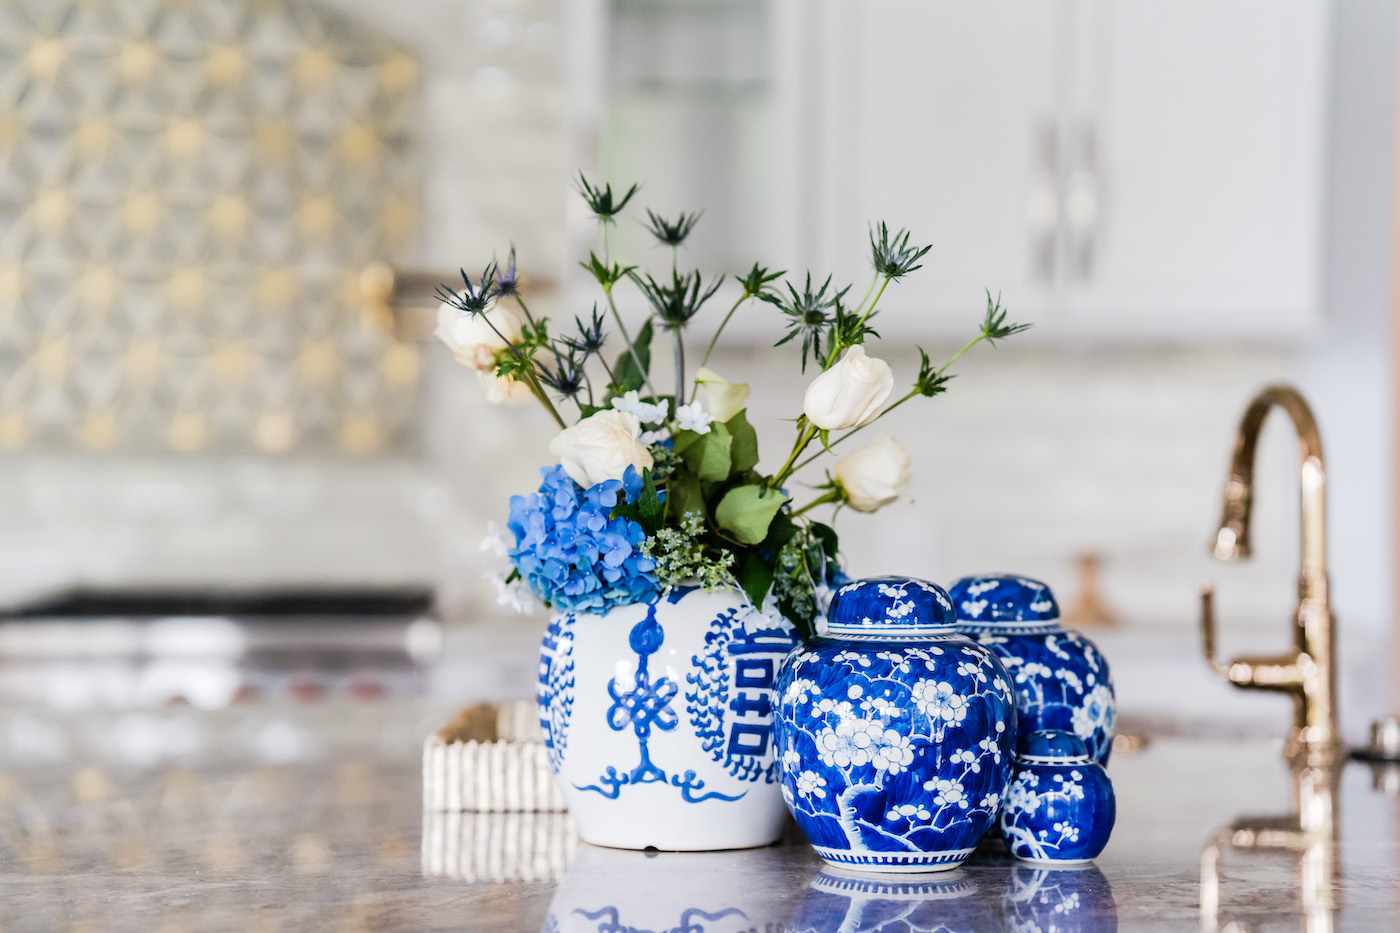 kitchen-decor-white-blue-china-vases